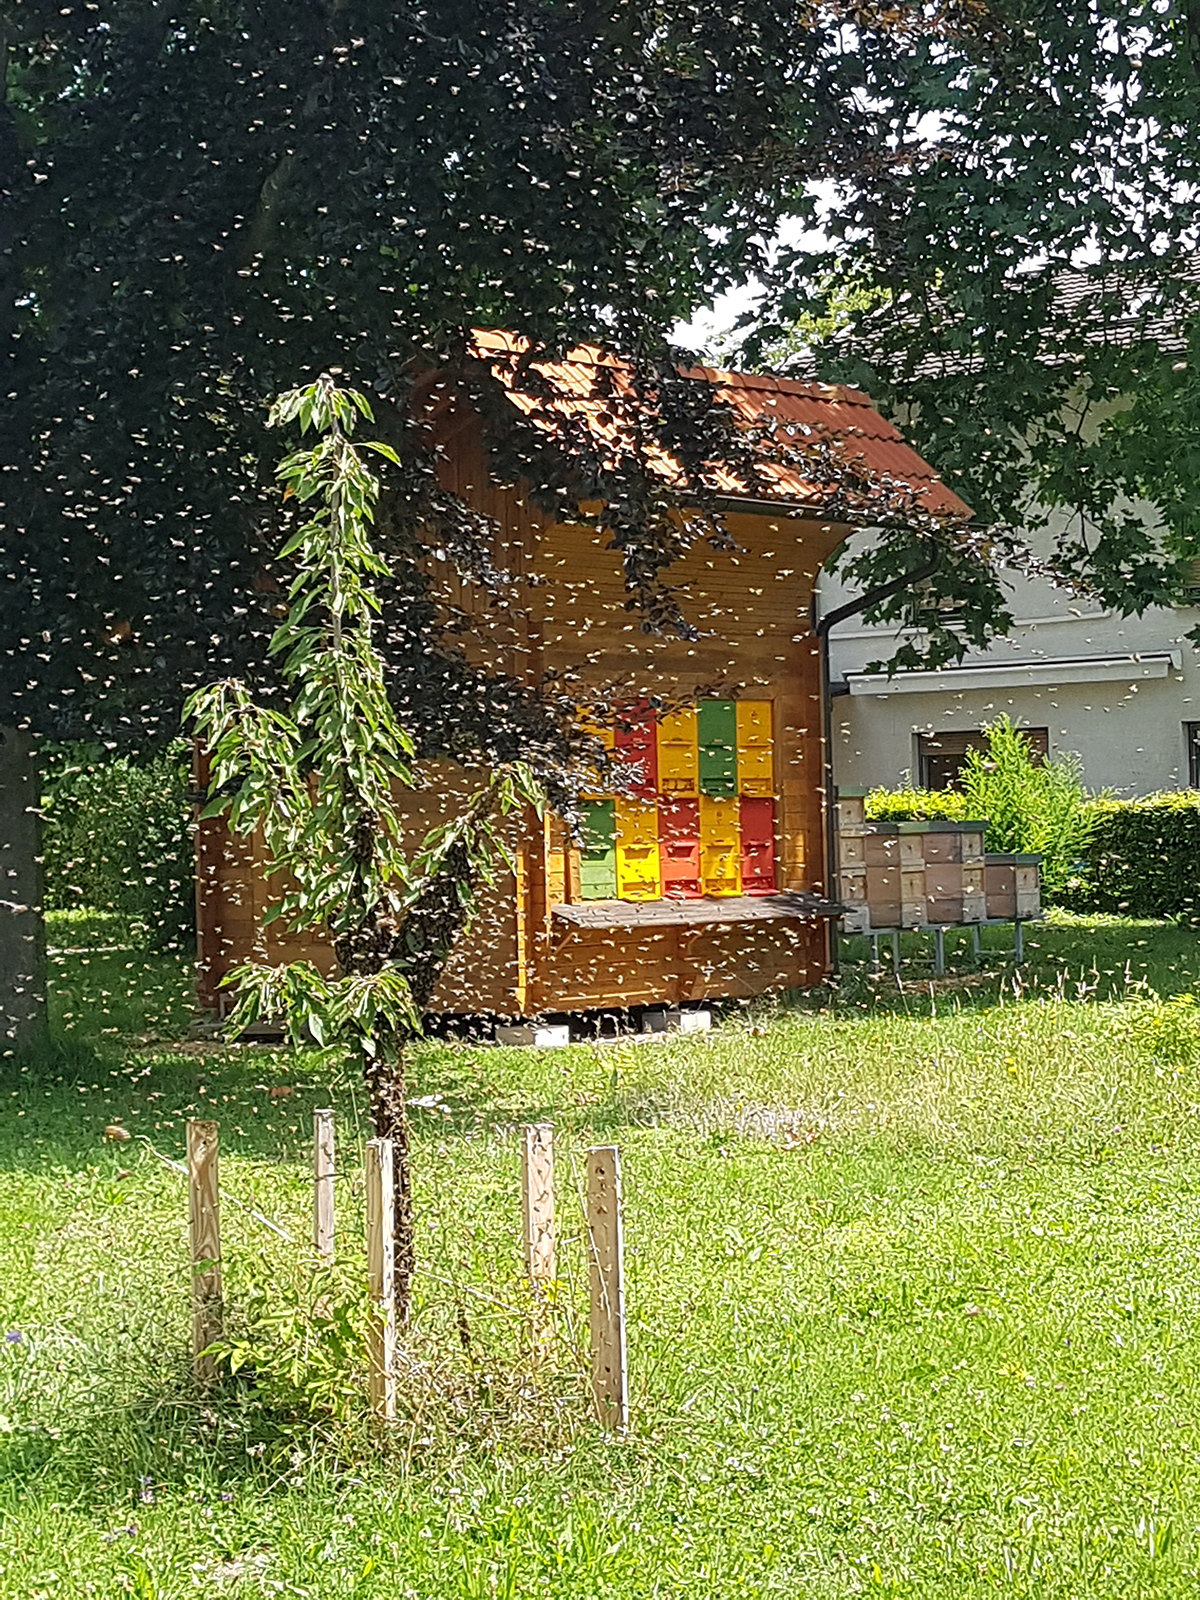 honeybee colonies, viruses